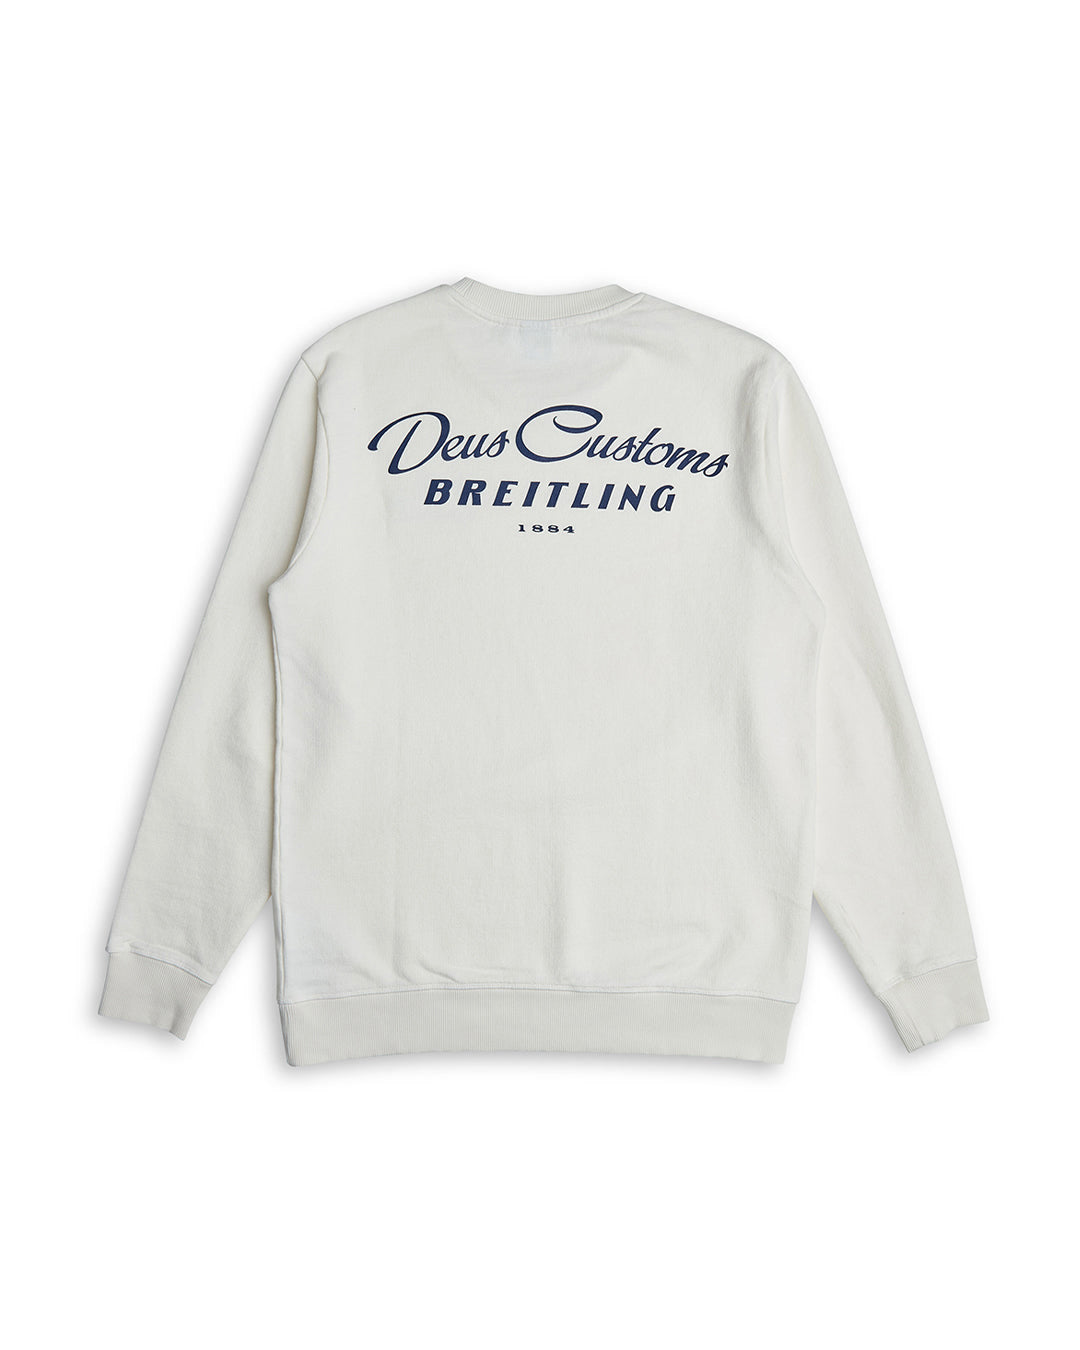 Breitling Deus Crew - Vintage White